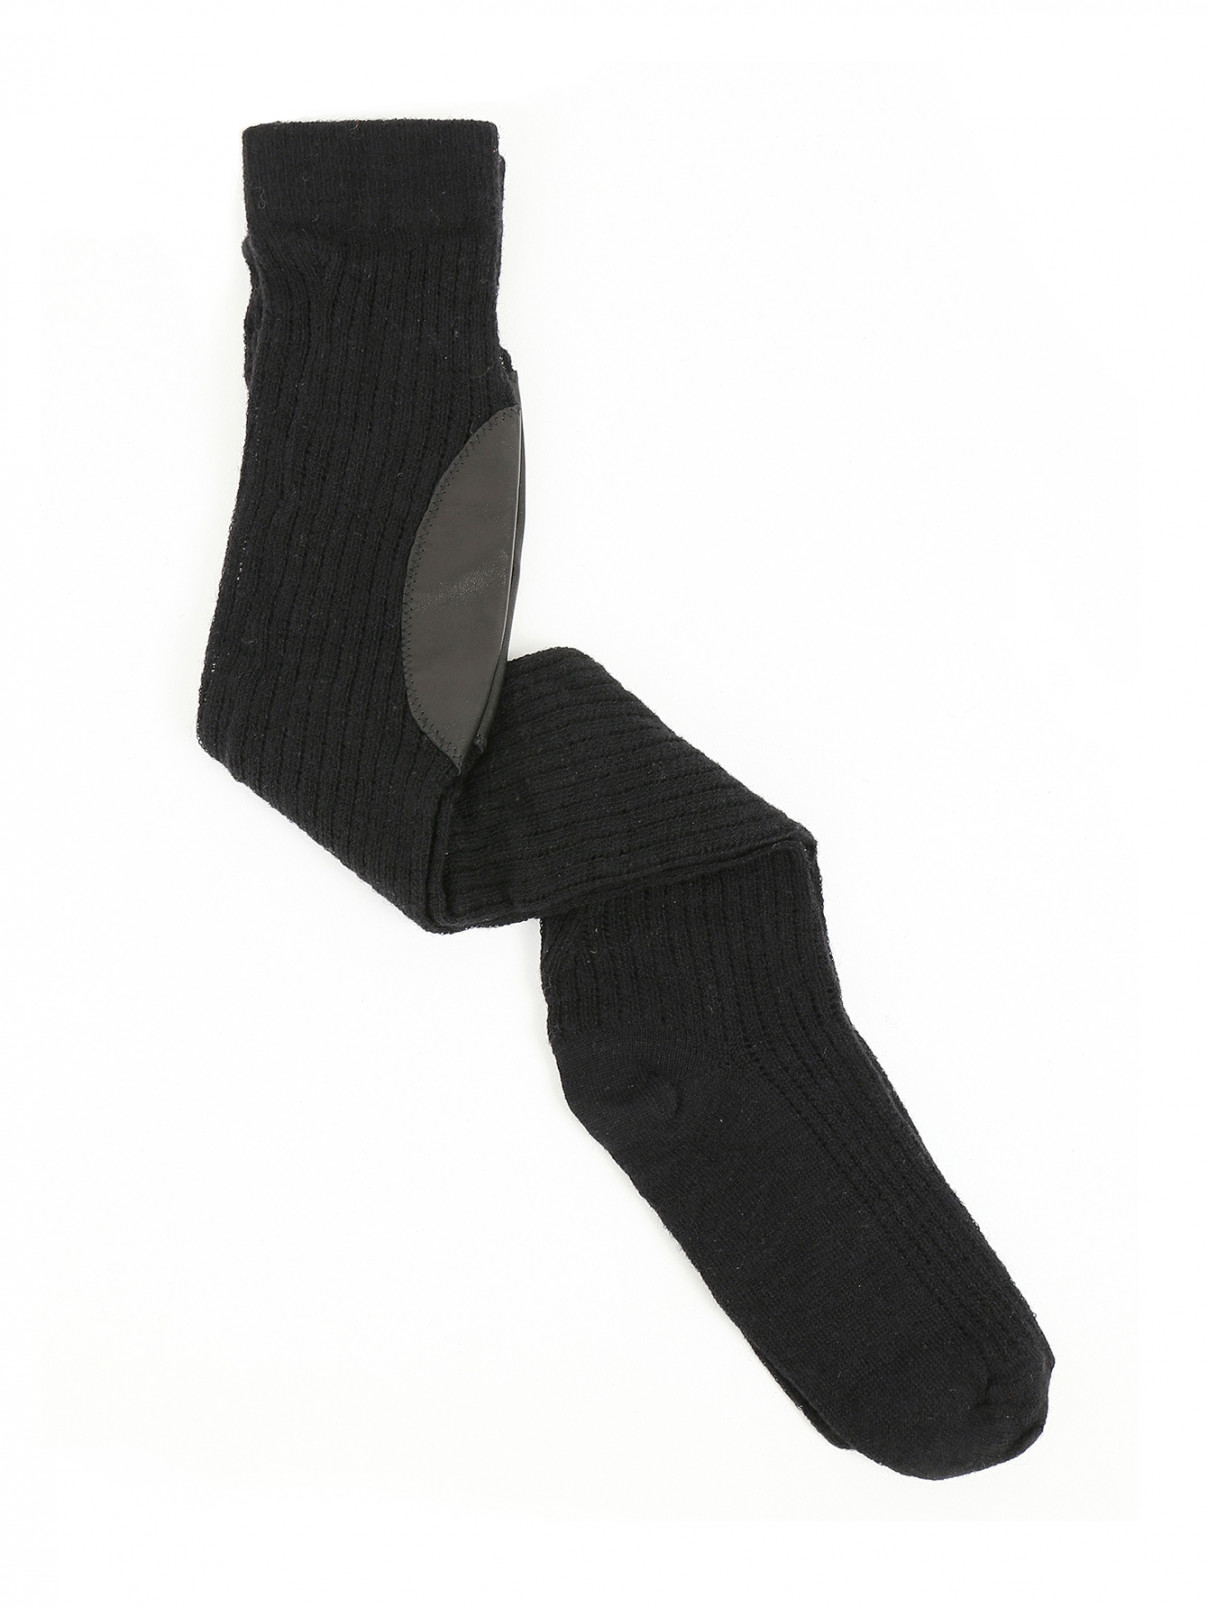 Чулки из шерсти с контрастными вставками Jean Paul Gaultier  –  Общий вид  – Цвет:  Черный